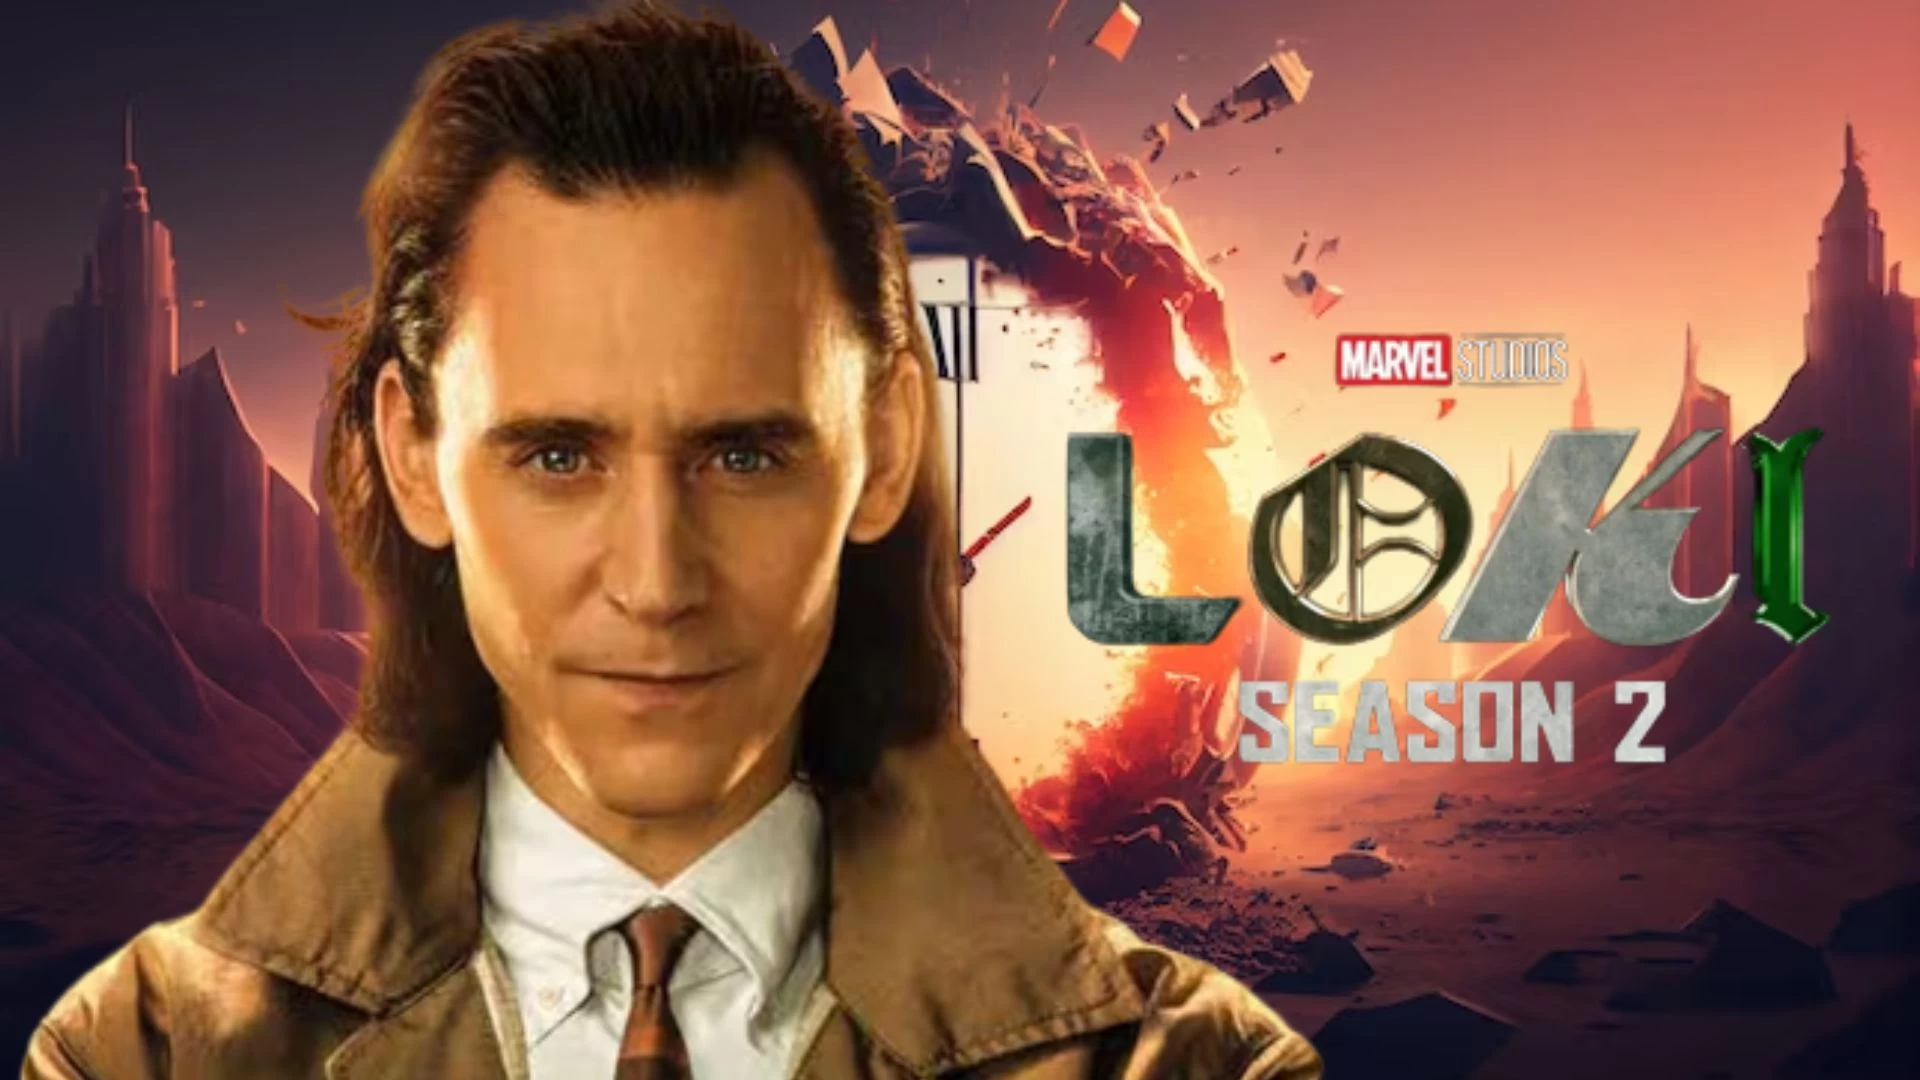 ¿La temporada 2 de Loki está basada en una historia real?  Trama, reparto y más de la temporada 2 de Loki